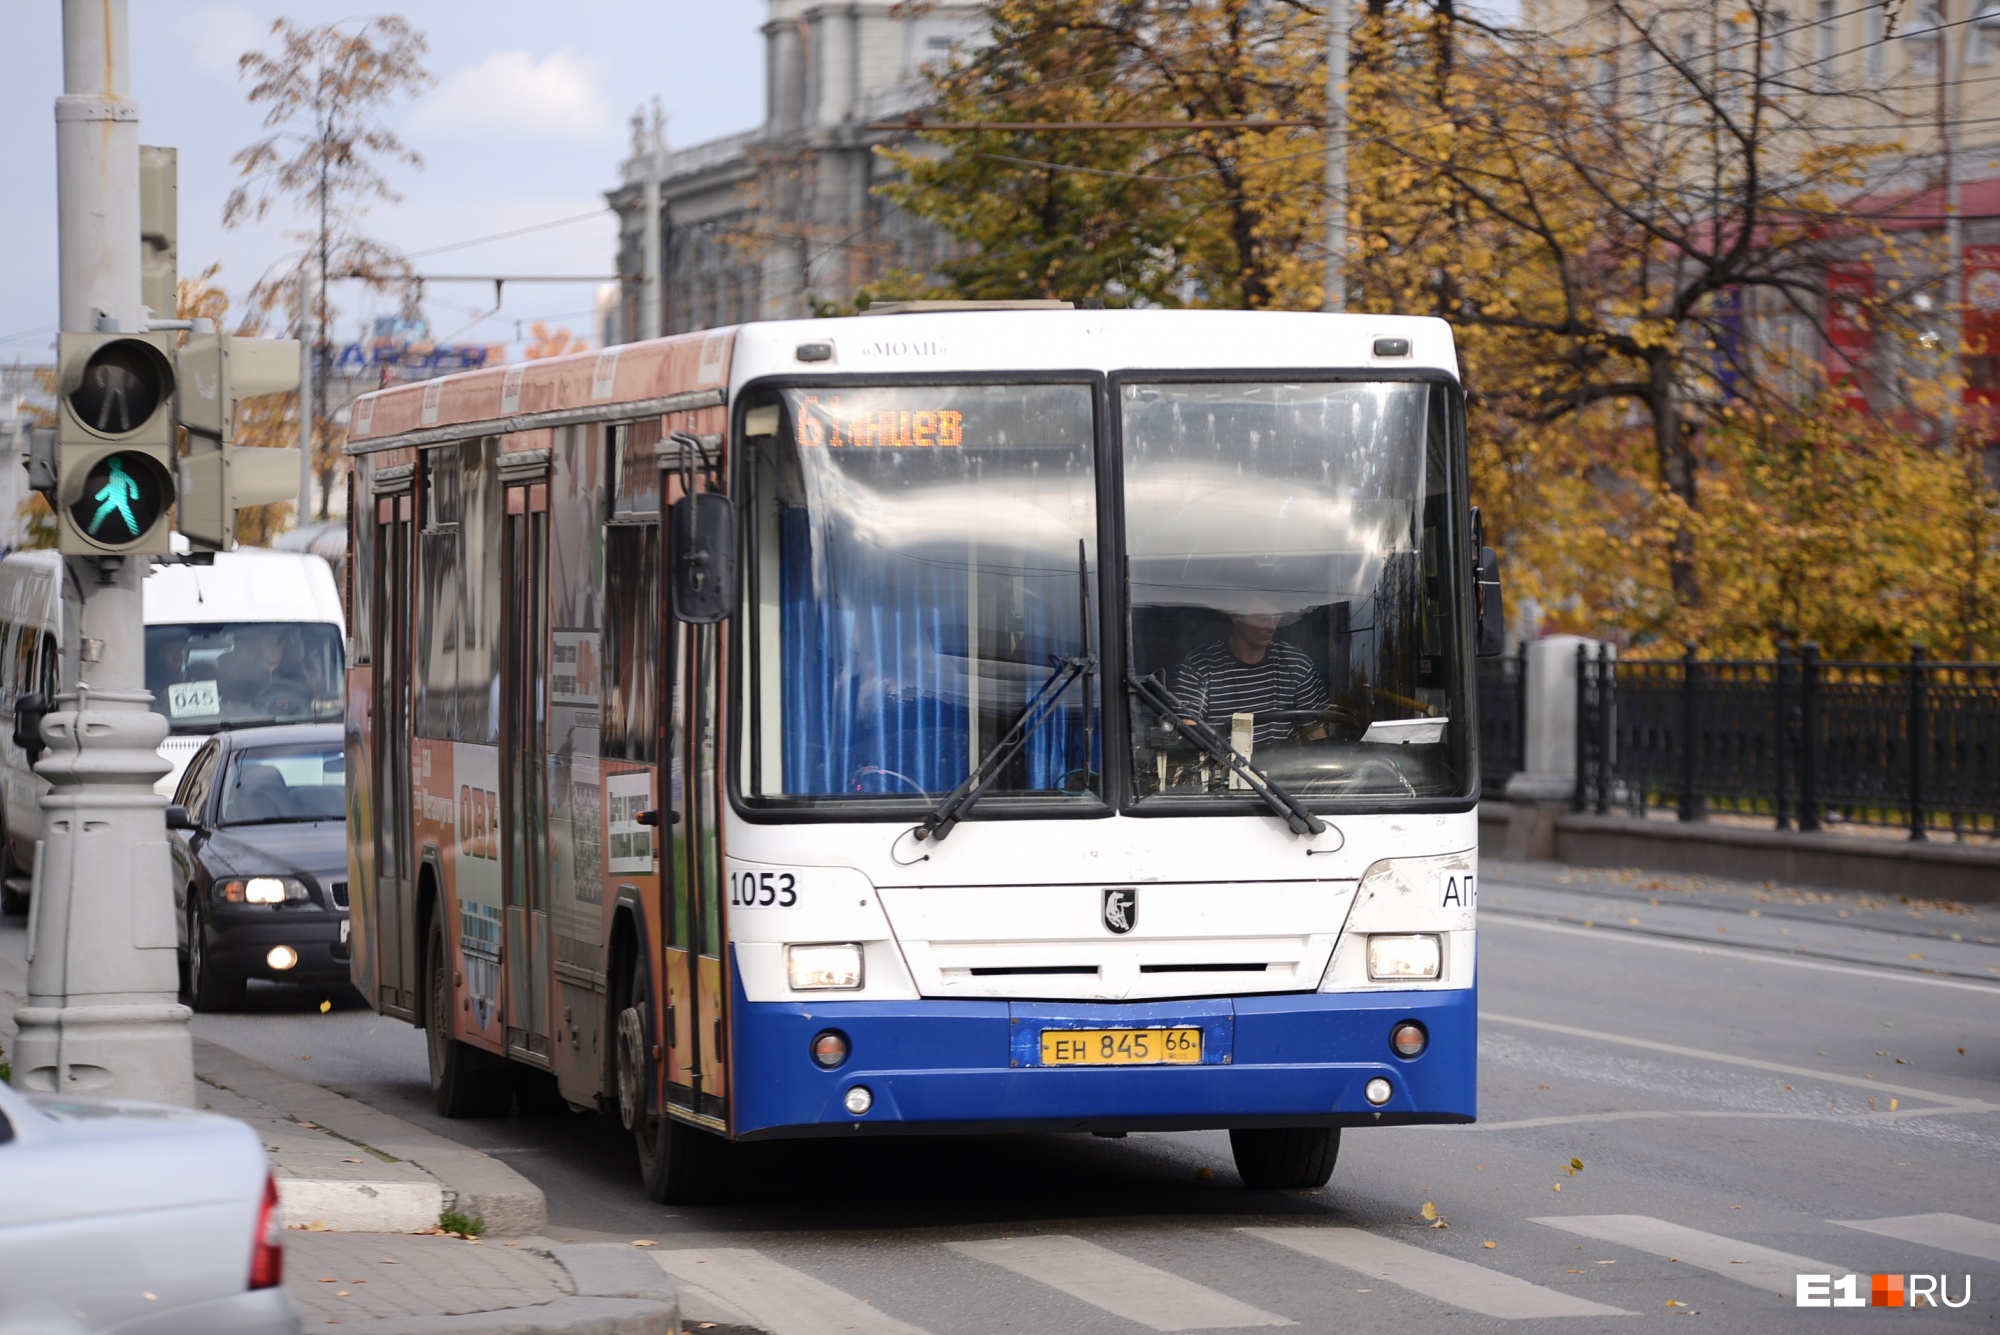 Мэрия объявила конкурс на обслуживание пяти автобусных маршрутов